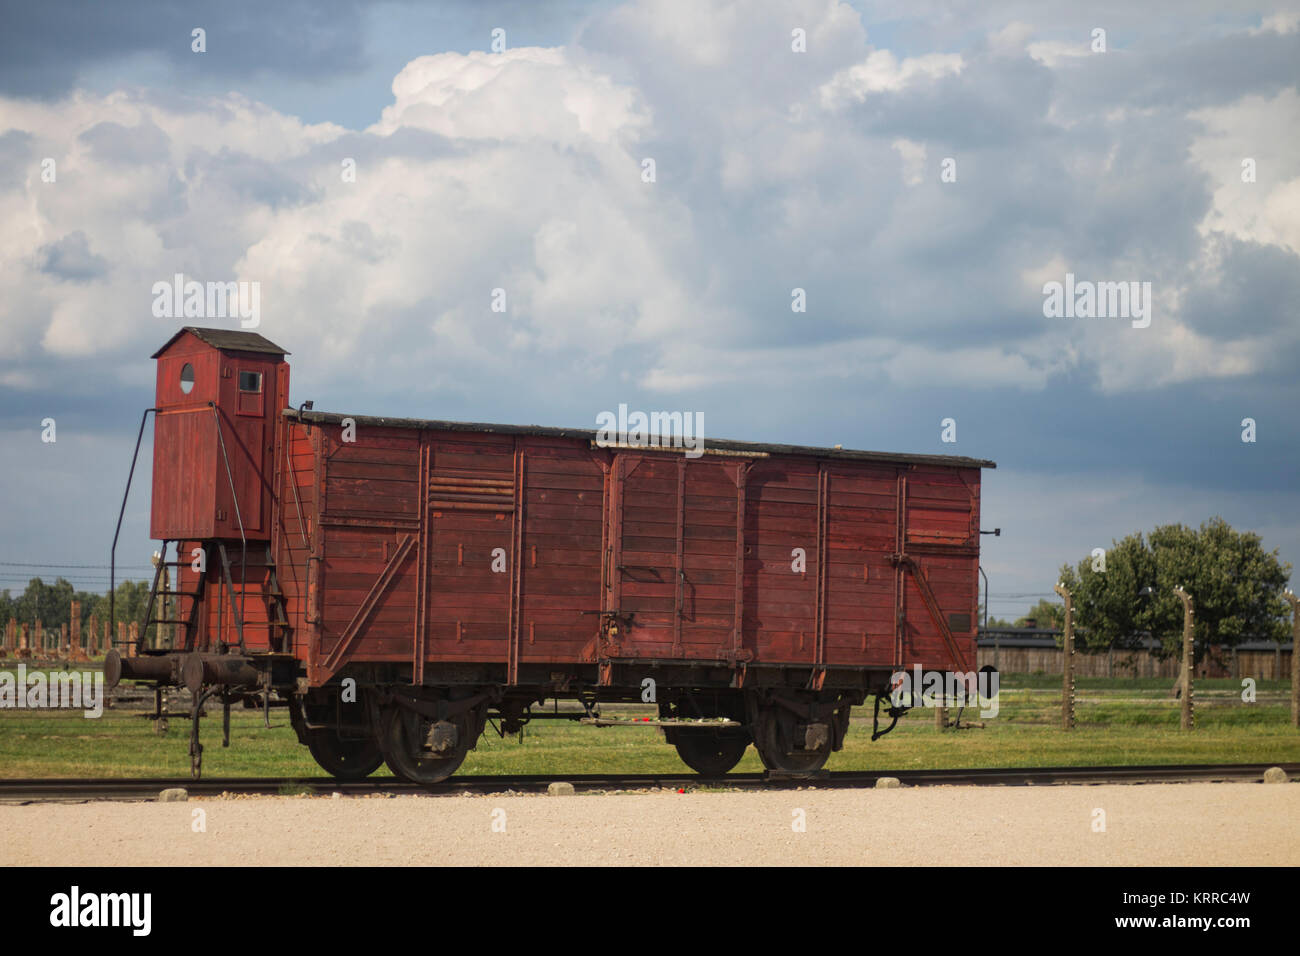 Un treno carrello utilizzato per il trasporto di persone a Auschwitz-Birkeanau durante l'olocausto. Il treno è tenuto ad Auschwitz memoriale, Cracovia in Polonia. Foto Stock